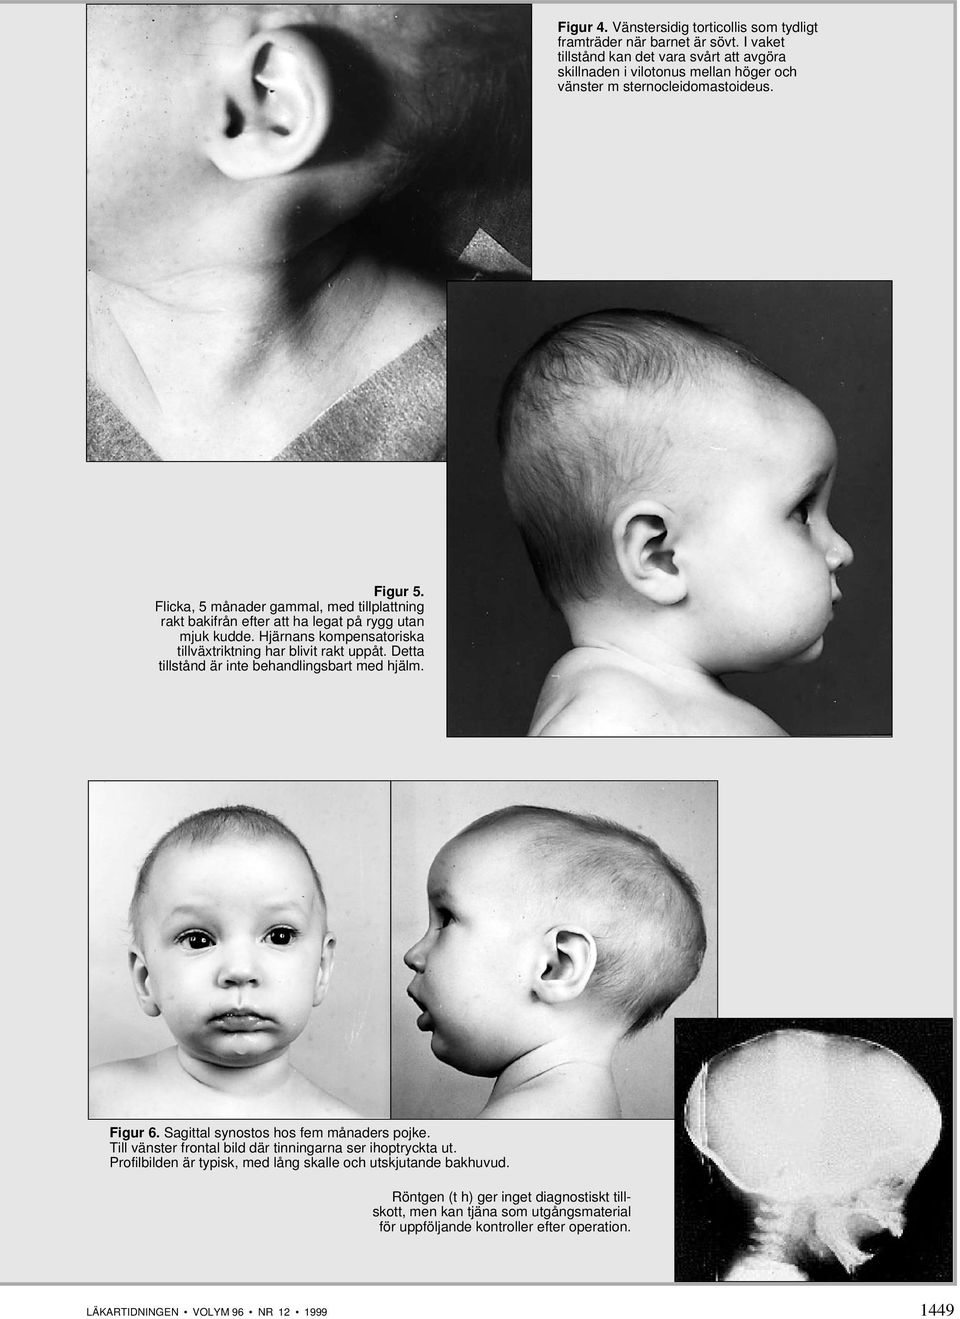 Flicka, 5 månader gammal, med tillplattning rakt bakifrån efter att ha legat på rygg utan mjuk kudde. Hjärnans kompensatoriska tillväxtriktning har blivit rakt uppåt.